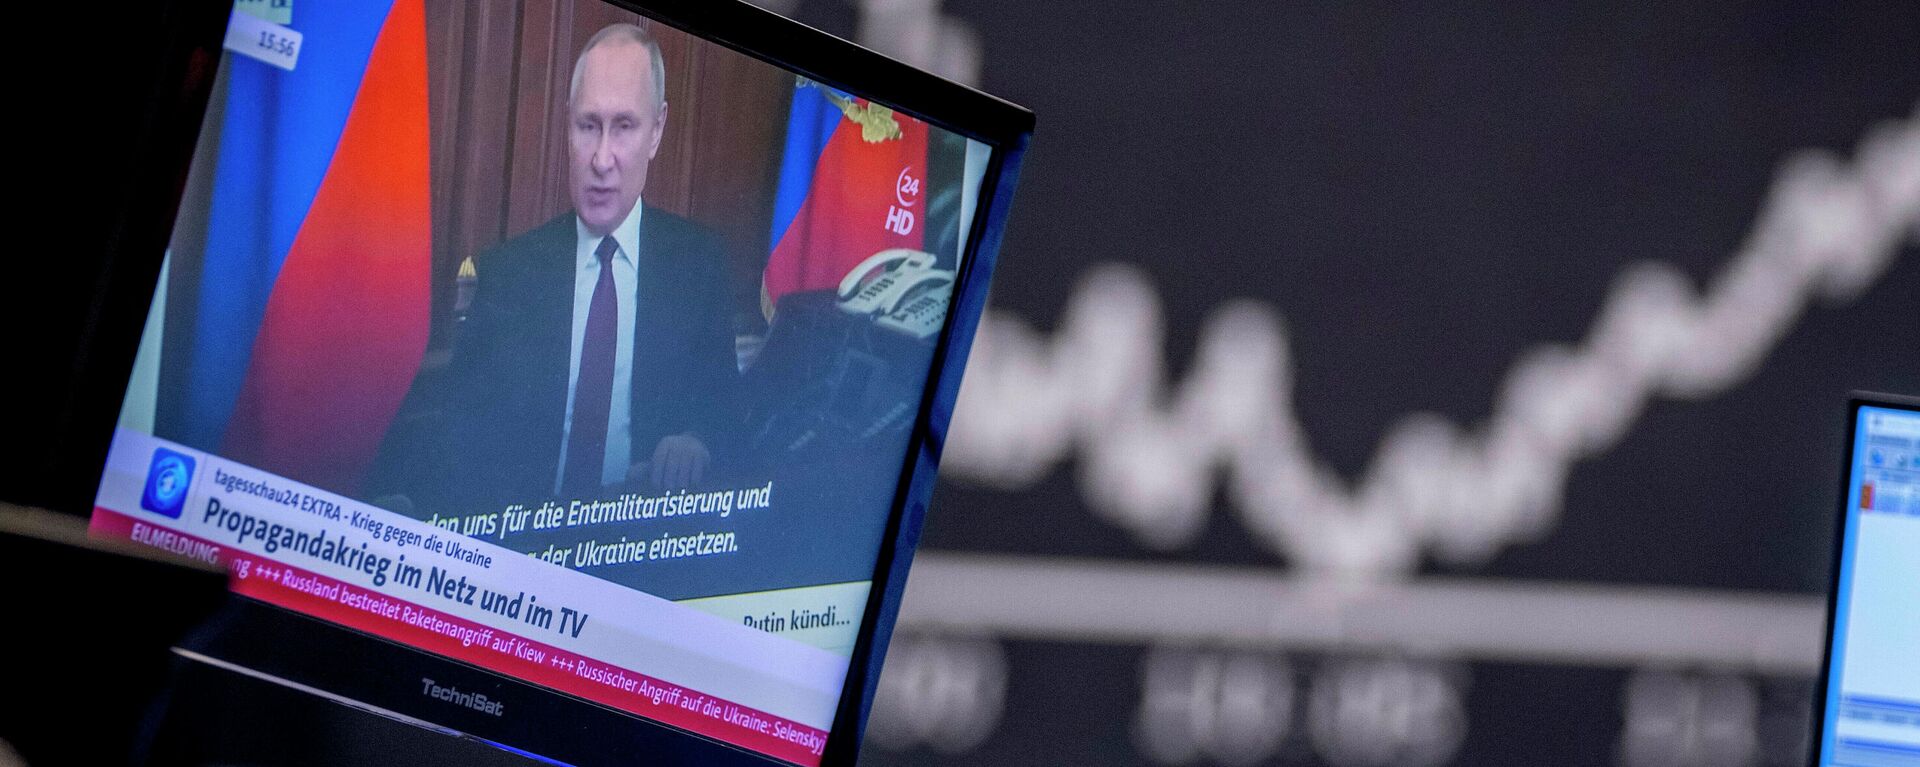 O presidente da Rússia, Vladimir Putin, aparece em uma tela de televisão no mercado de ações em Frankfurt, Alemanha, sexta-feira, 25 de fevereiro de 2022 - Sputnik Brasil, 1920, 26.02.2022